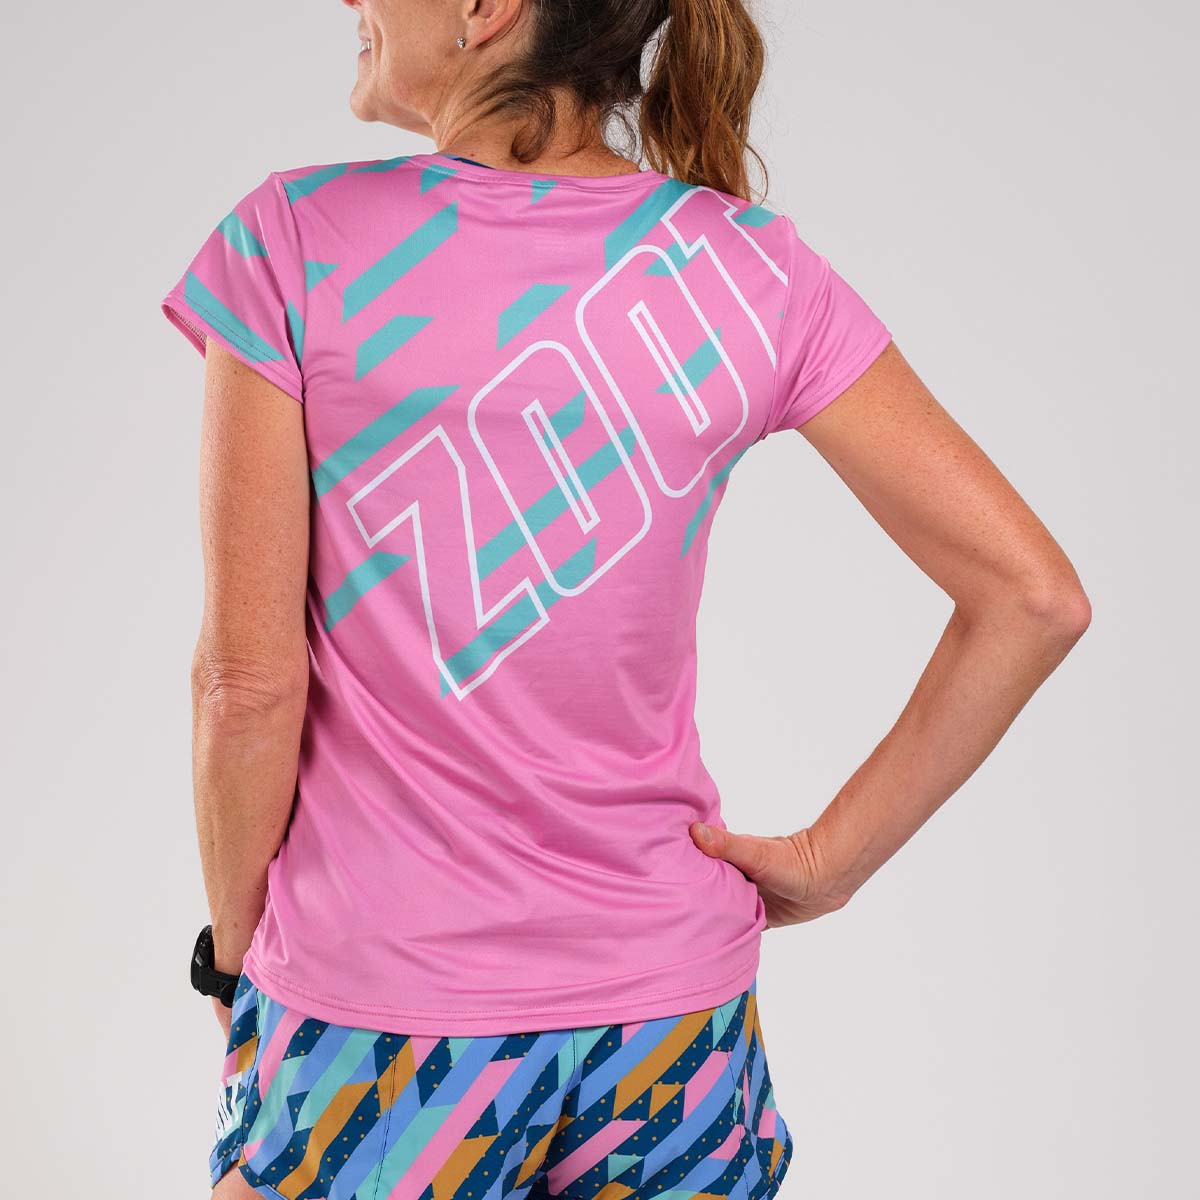 Zoot Sports RUN TEE Women's LTD Run Tee - Unbreakable